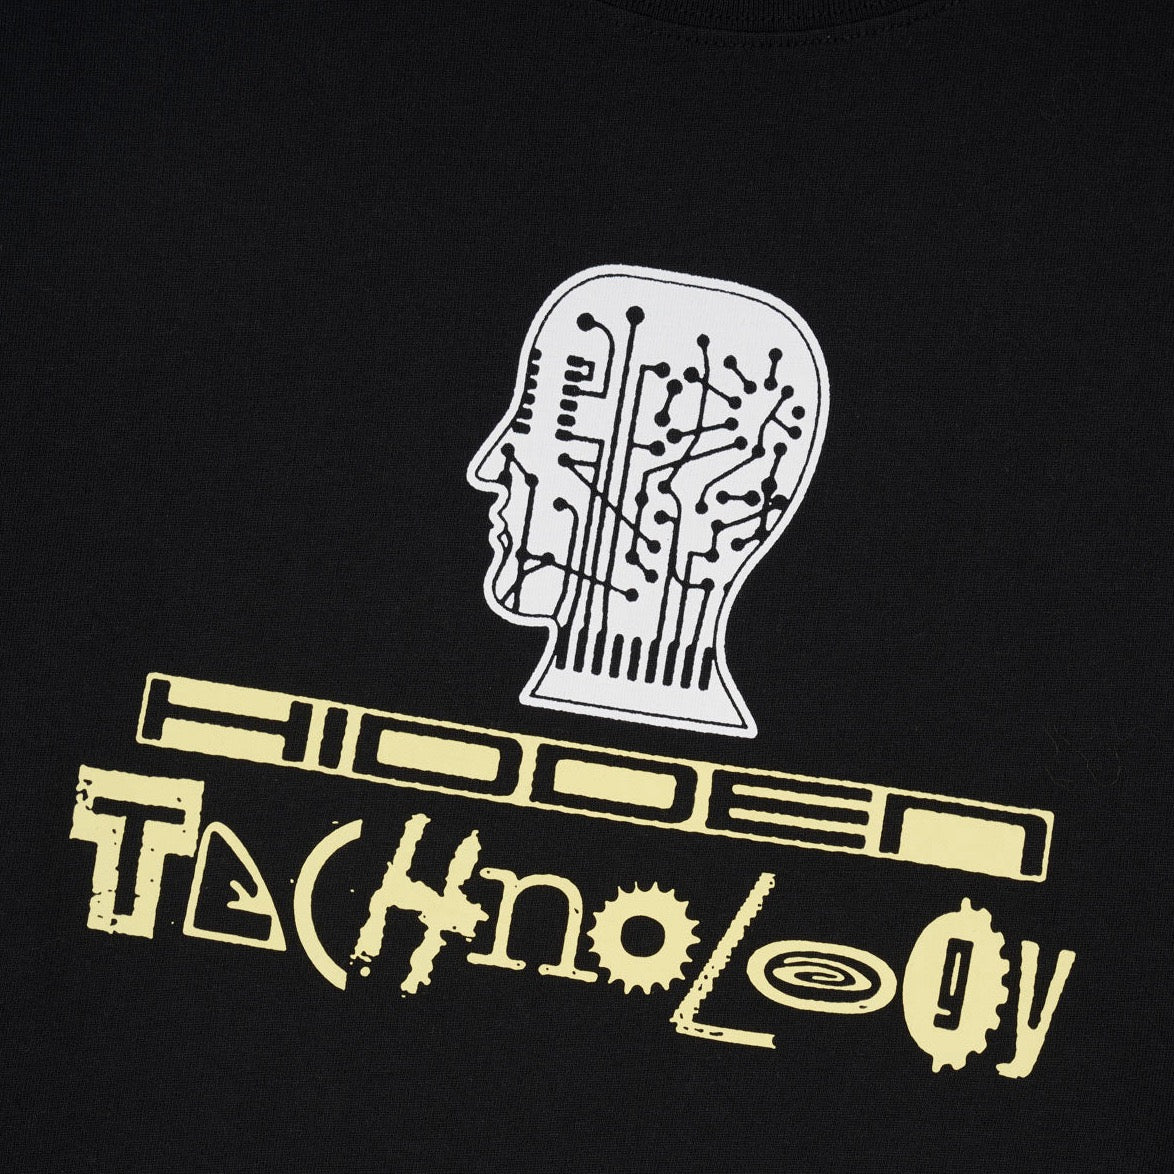 Brain Dead Hidden Tech T-Shirt Black